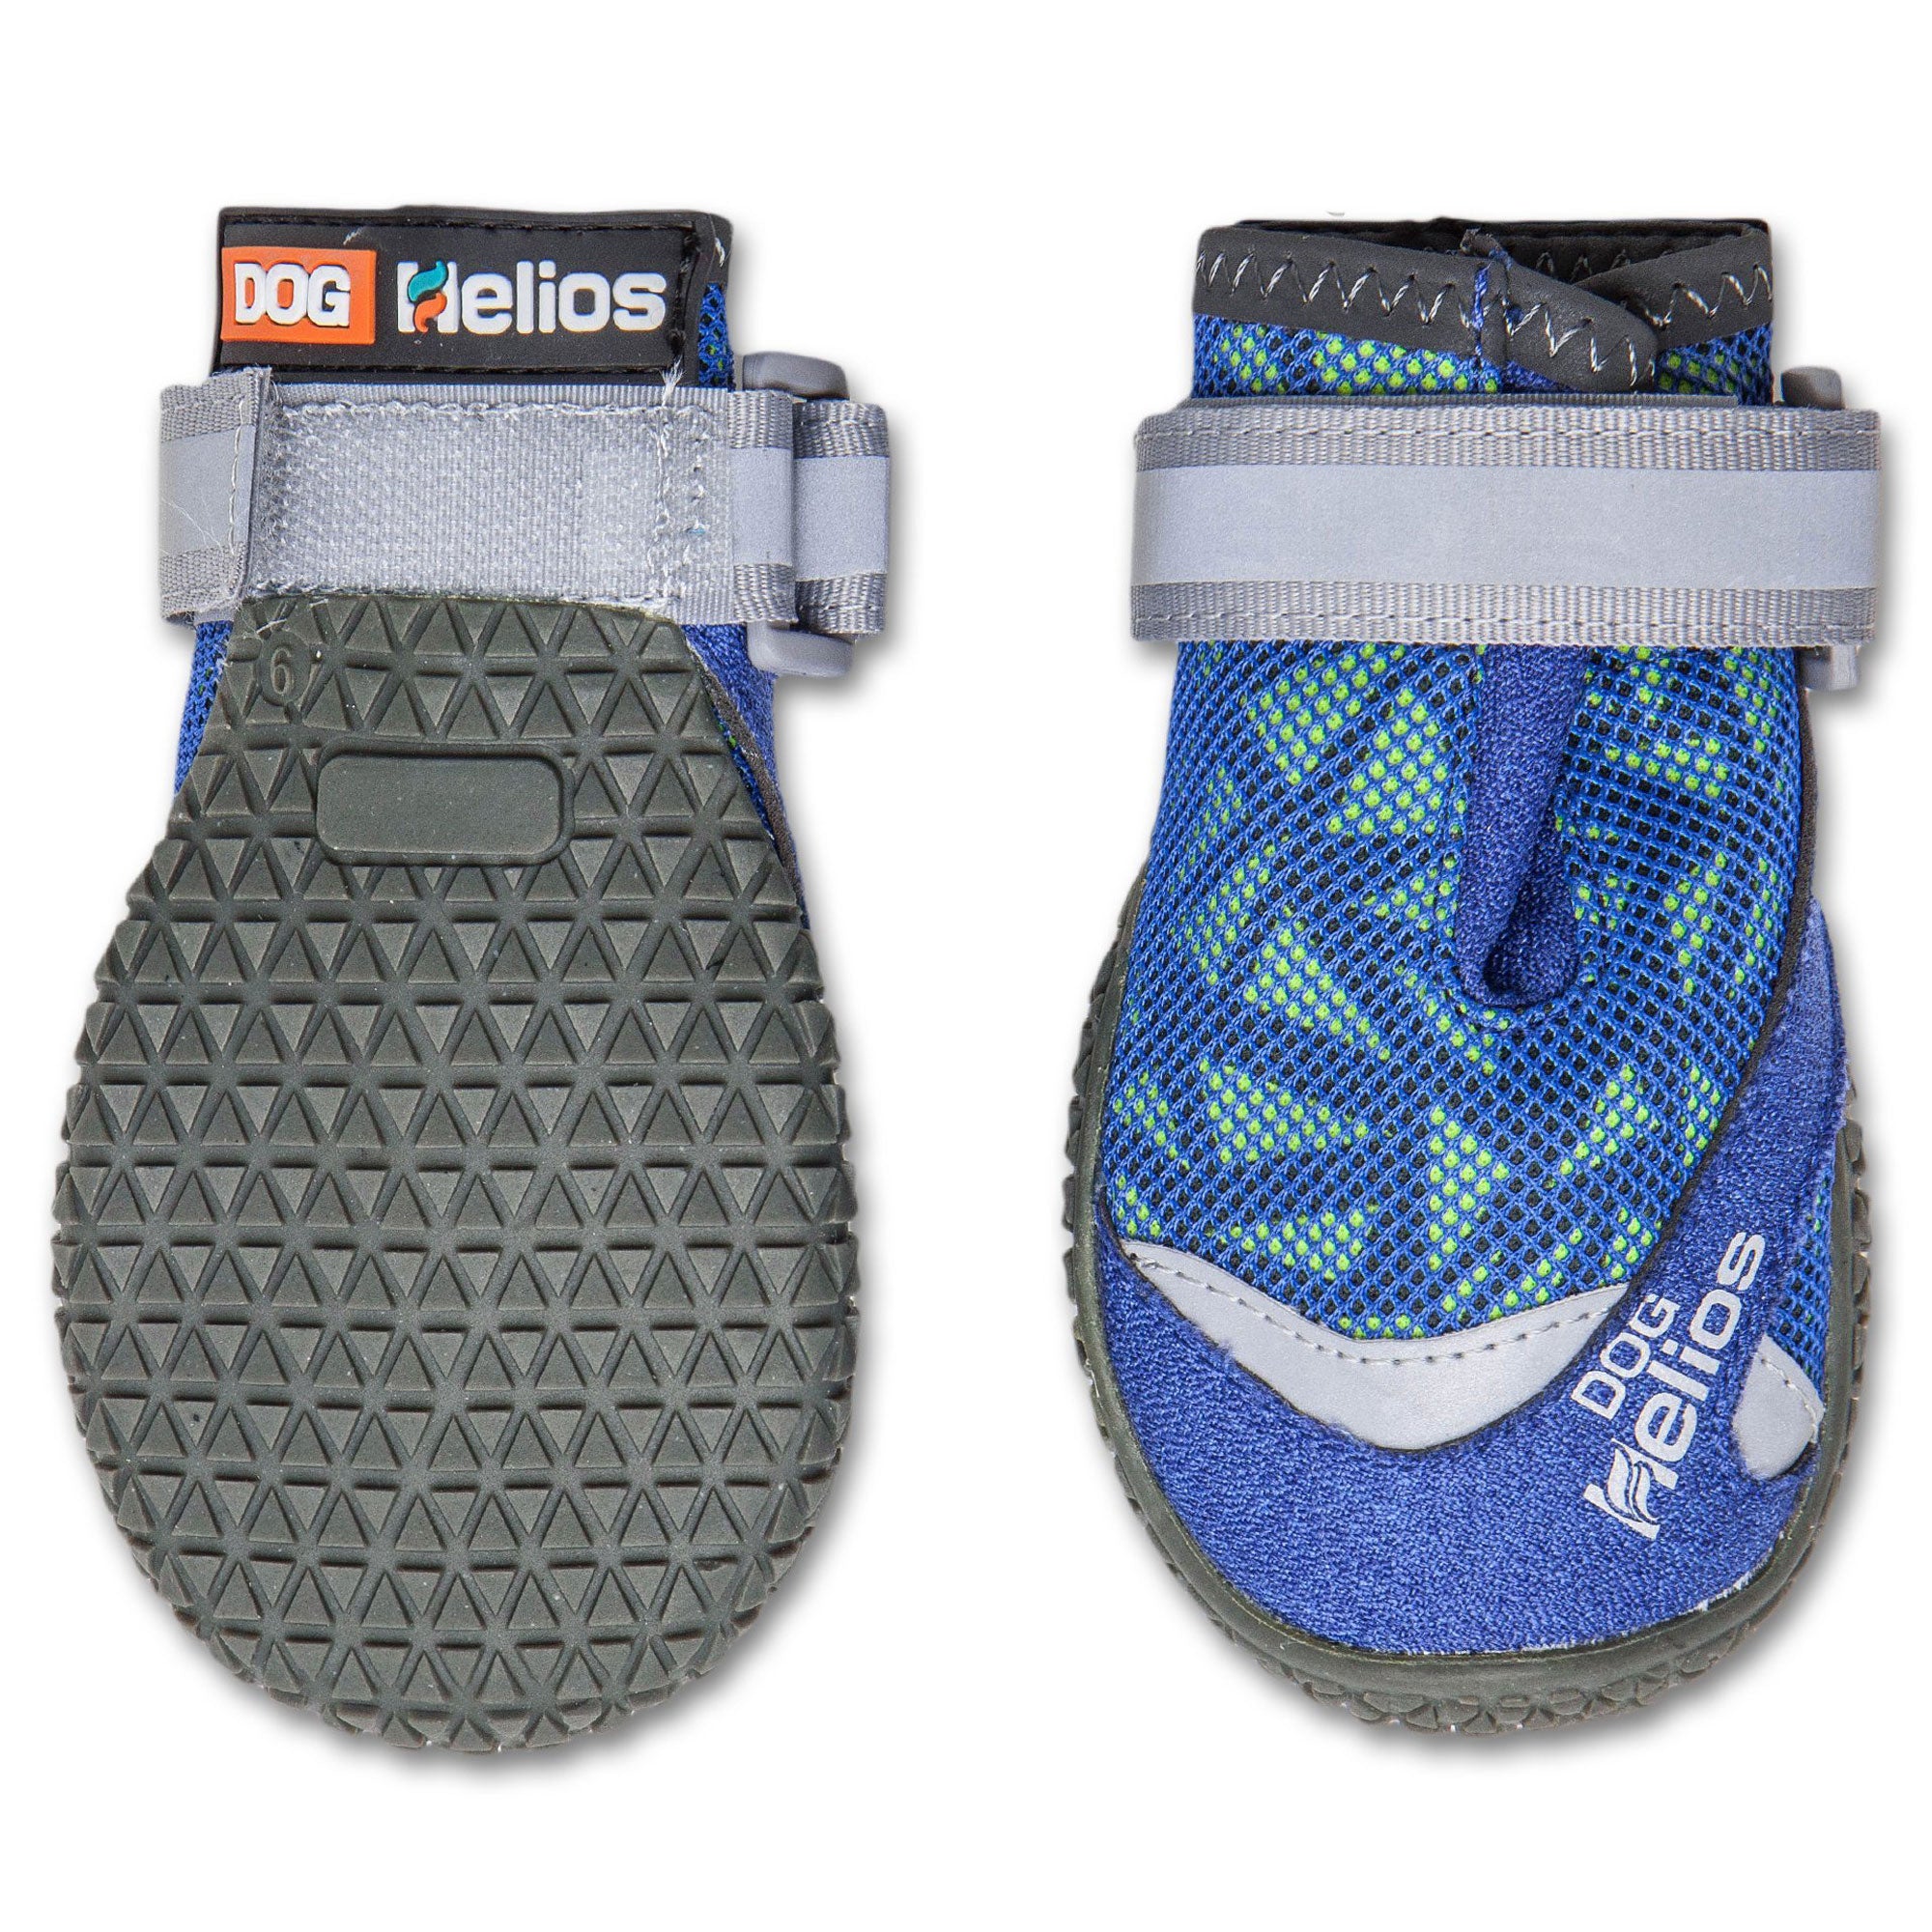 Dog Helios® Surface Performance Dog Shoes - Blue - Large